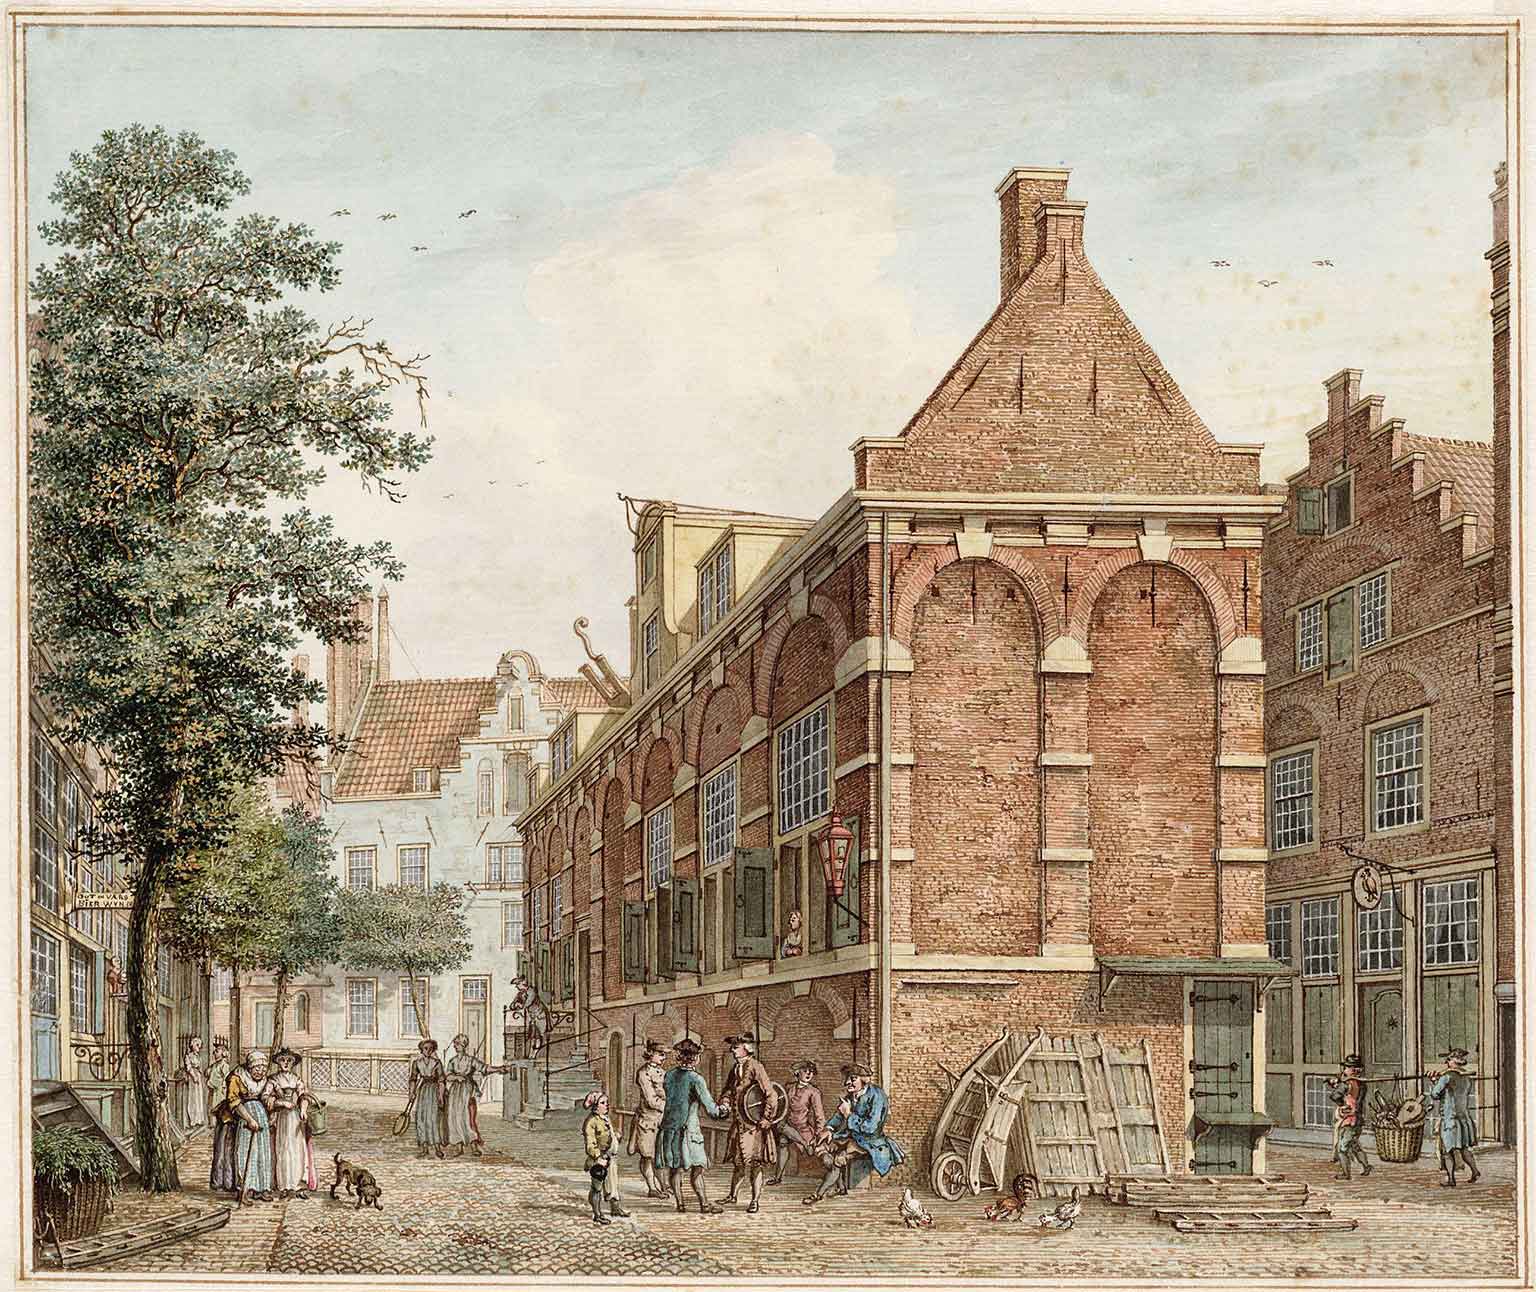 Korenmetershuis on Nieuwezijds Kolk 28 in 1780, watercolor by Herman Schouten